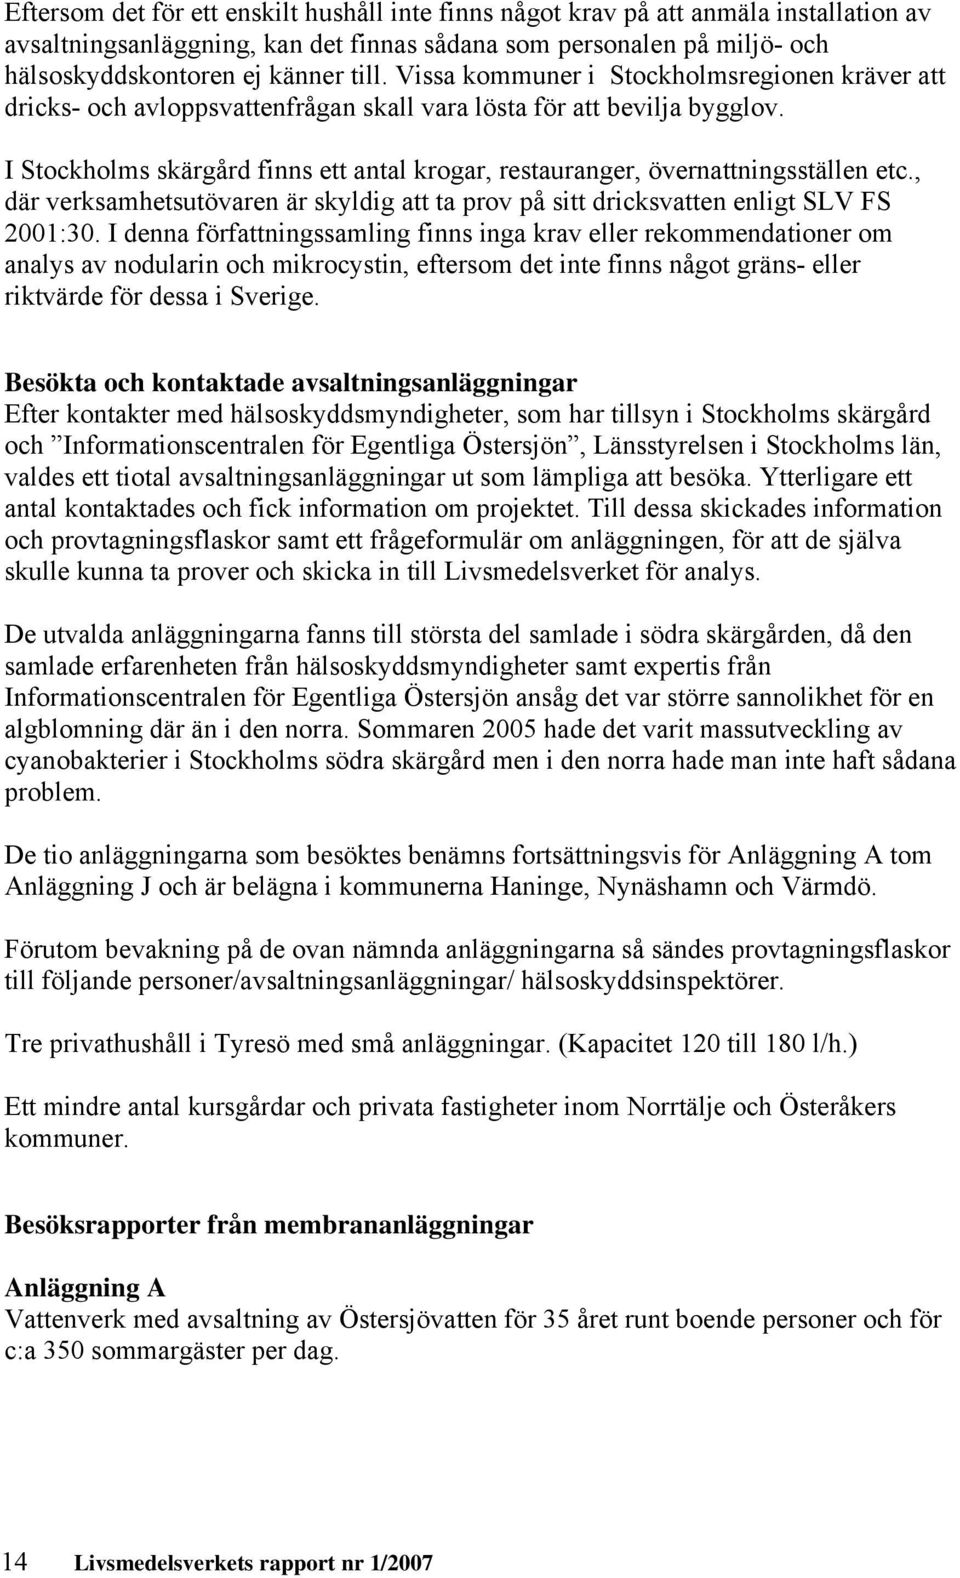 I Stockholms skärgård finns ett antal krogar, restauranger, övernattningsställen etc., där verksamhetsutövaren är skyldig att ta prov på sitt dricksvatten enligt SLV FS 2001:30.